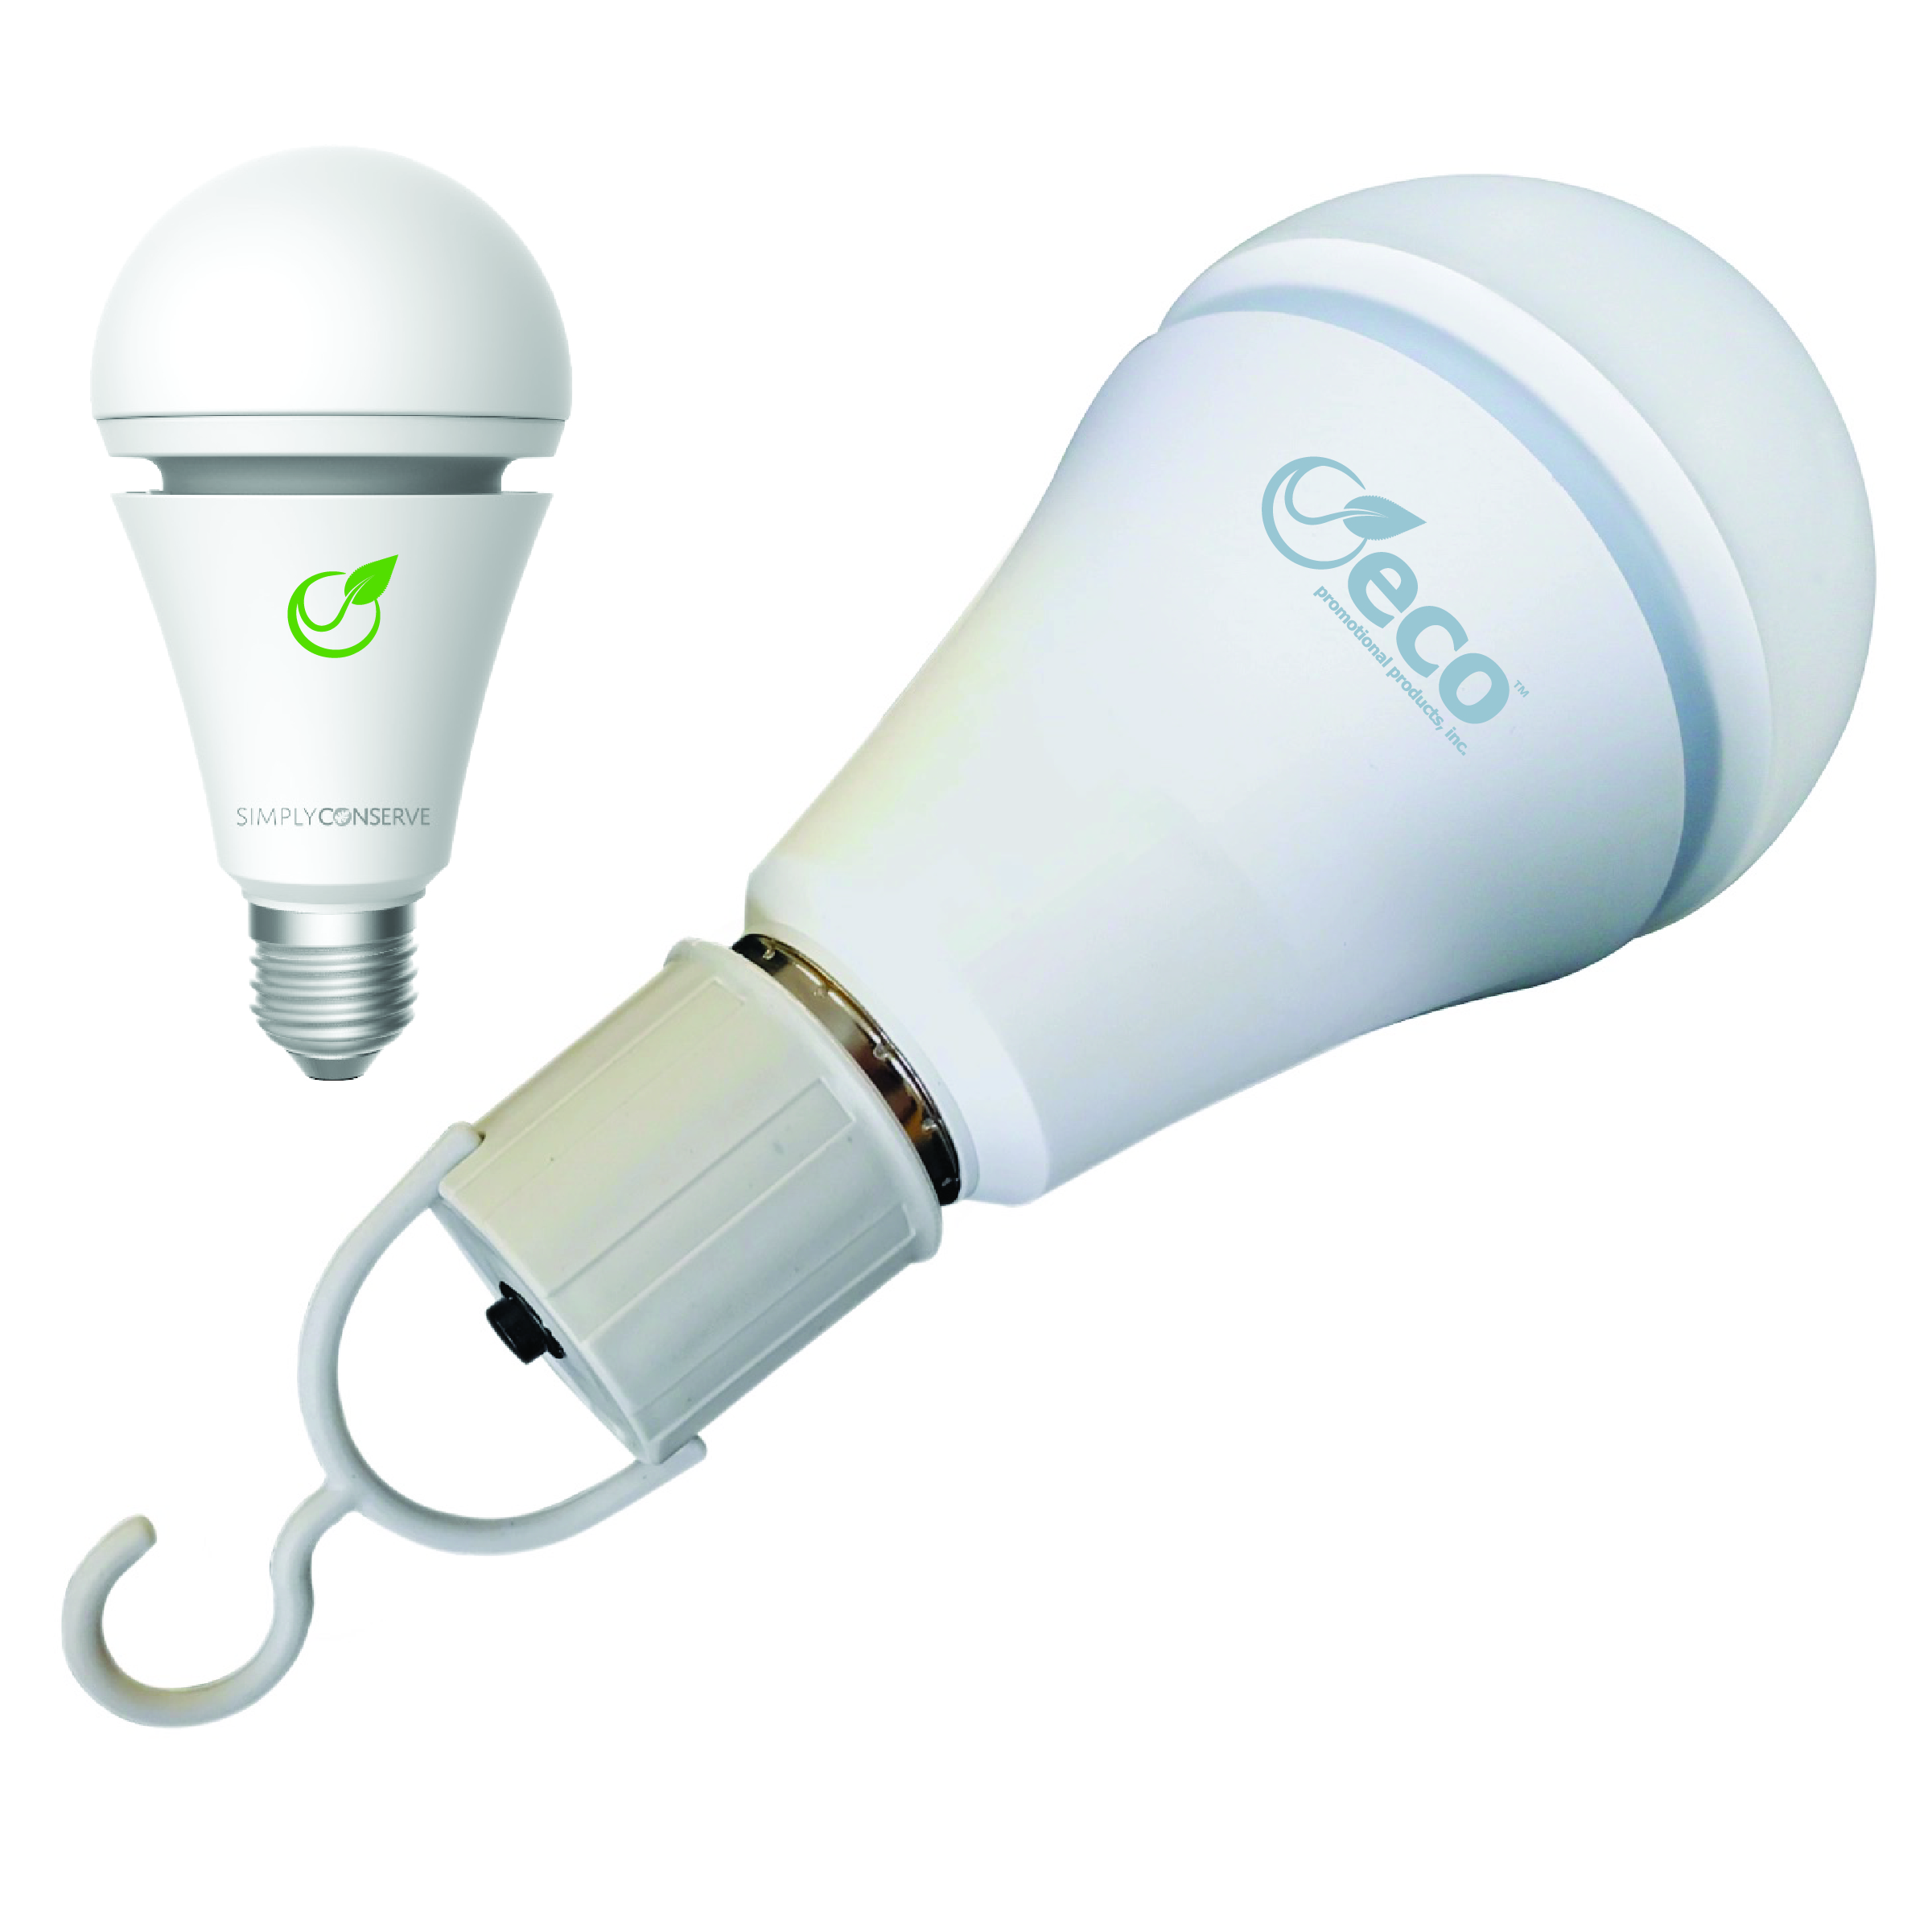 Hooked LED Lightbulb with Back-up Battery | Energy Saving 